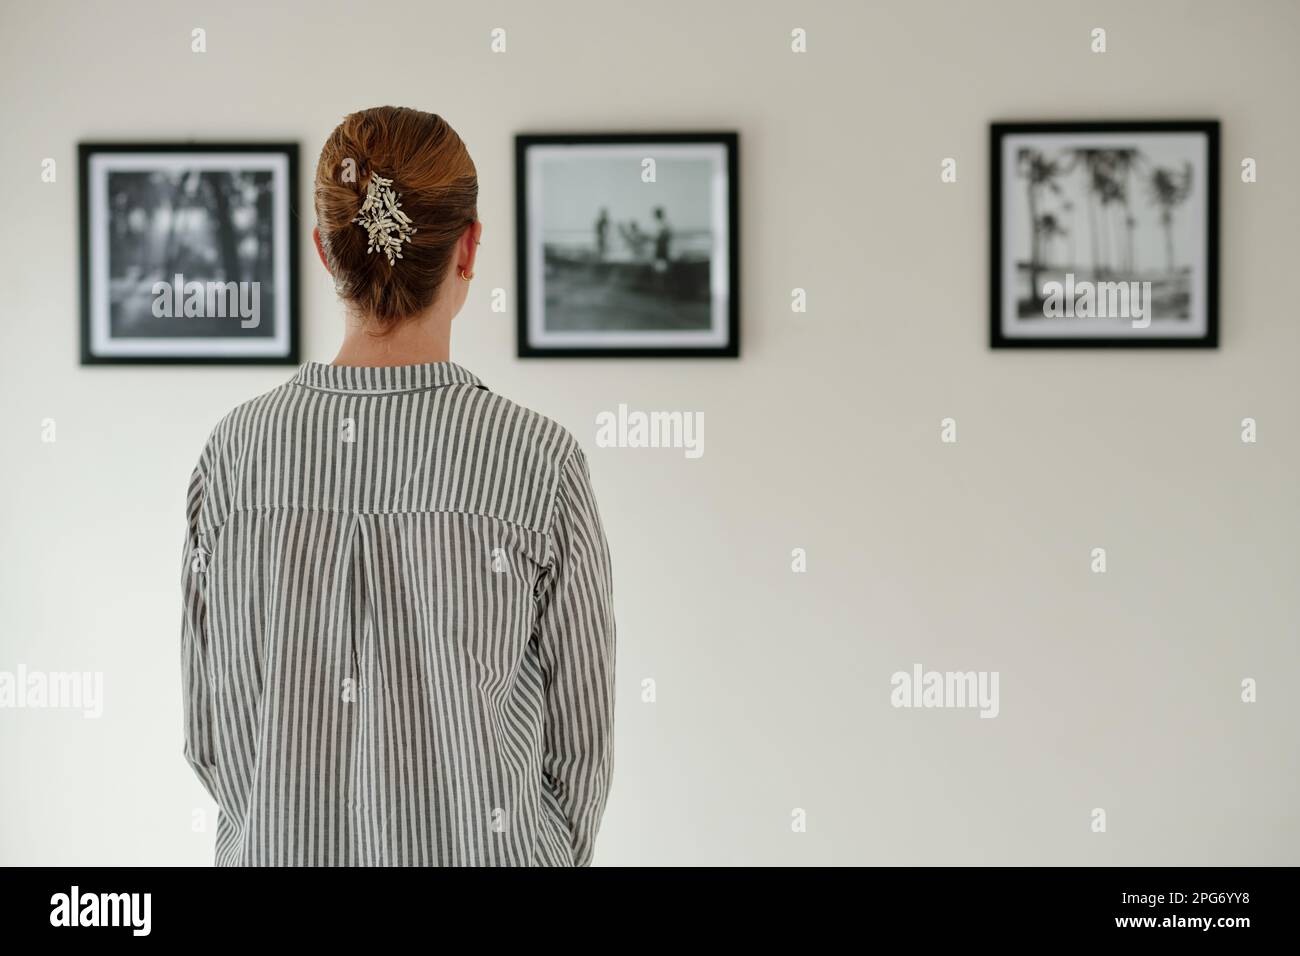 Vue arrière d'une jeune femme en chemise rayée devant le mur avec des photos ou des œuvres d'art dans des cadres noirs lors d'une visite de la galerie d'art Banque D'Images